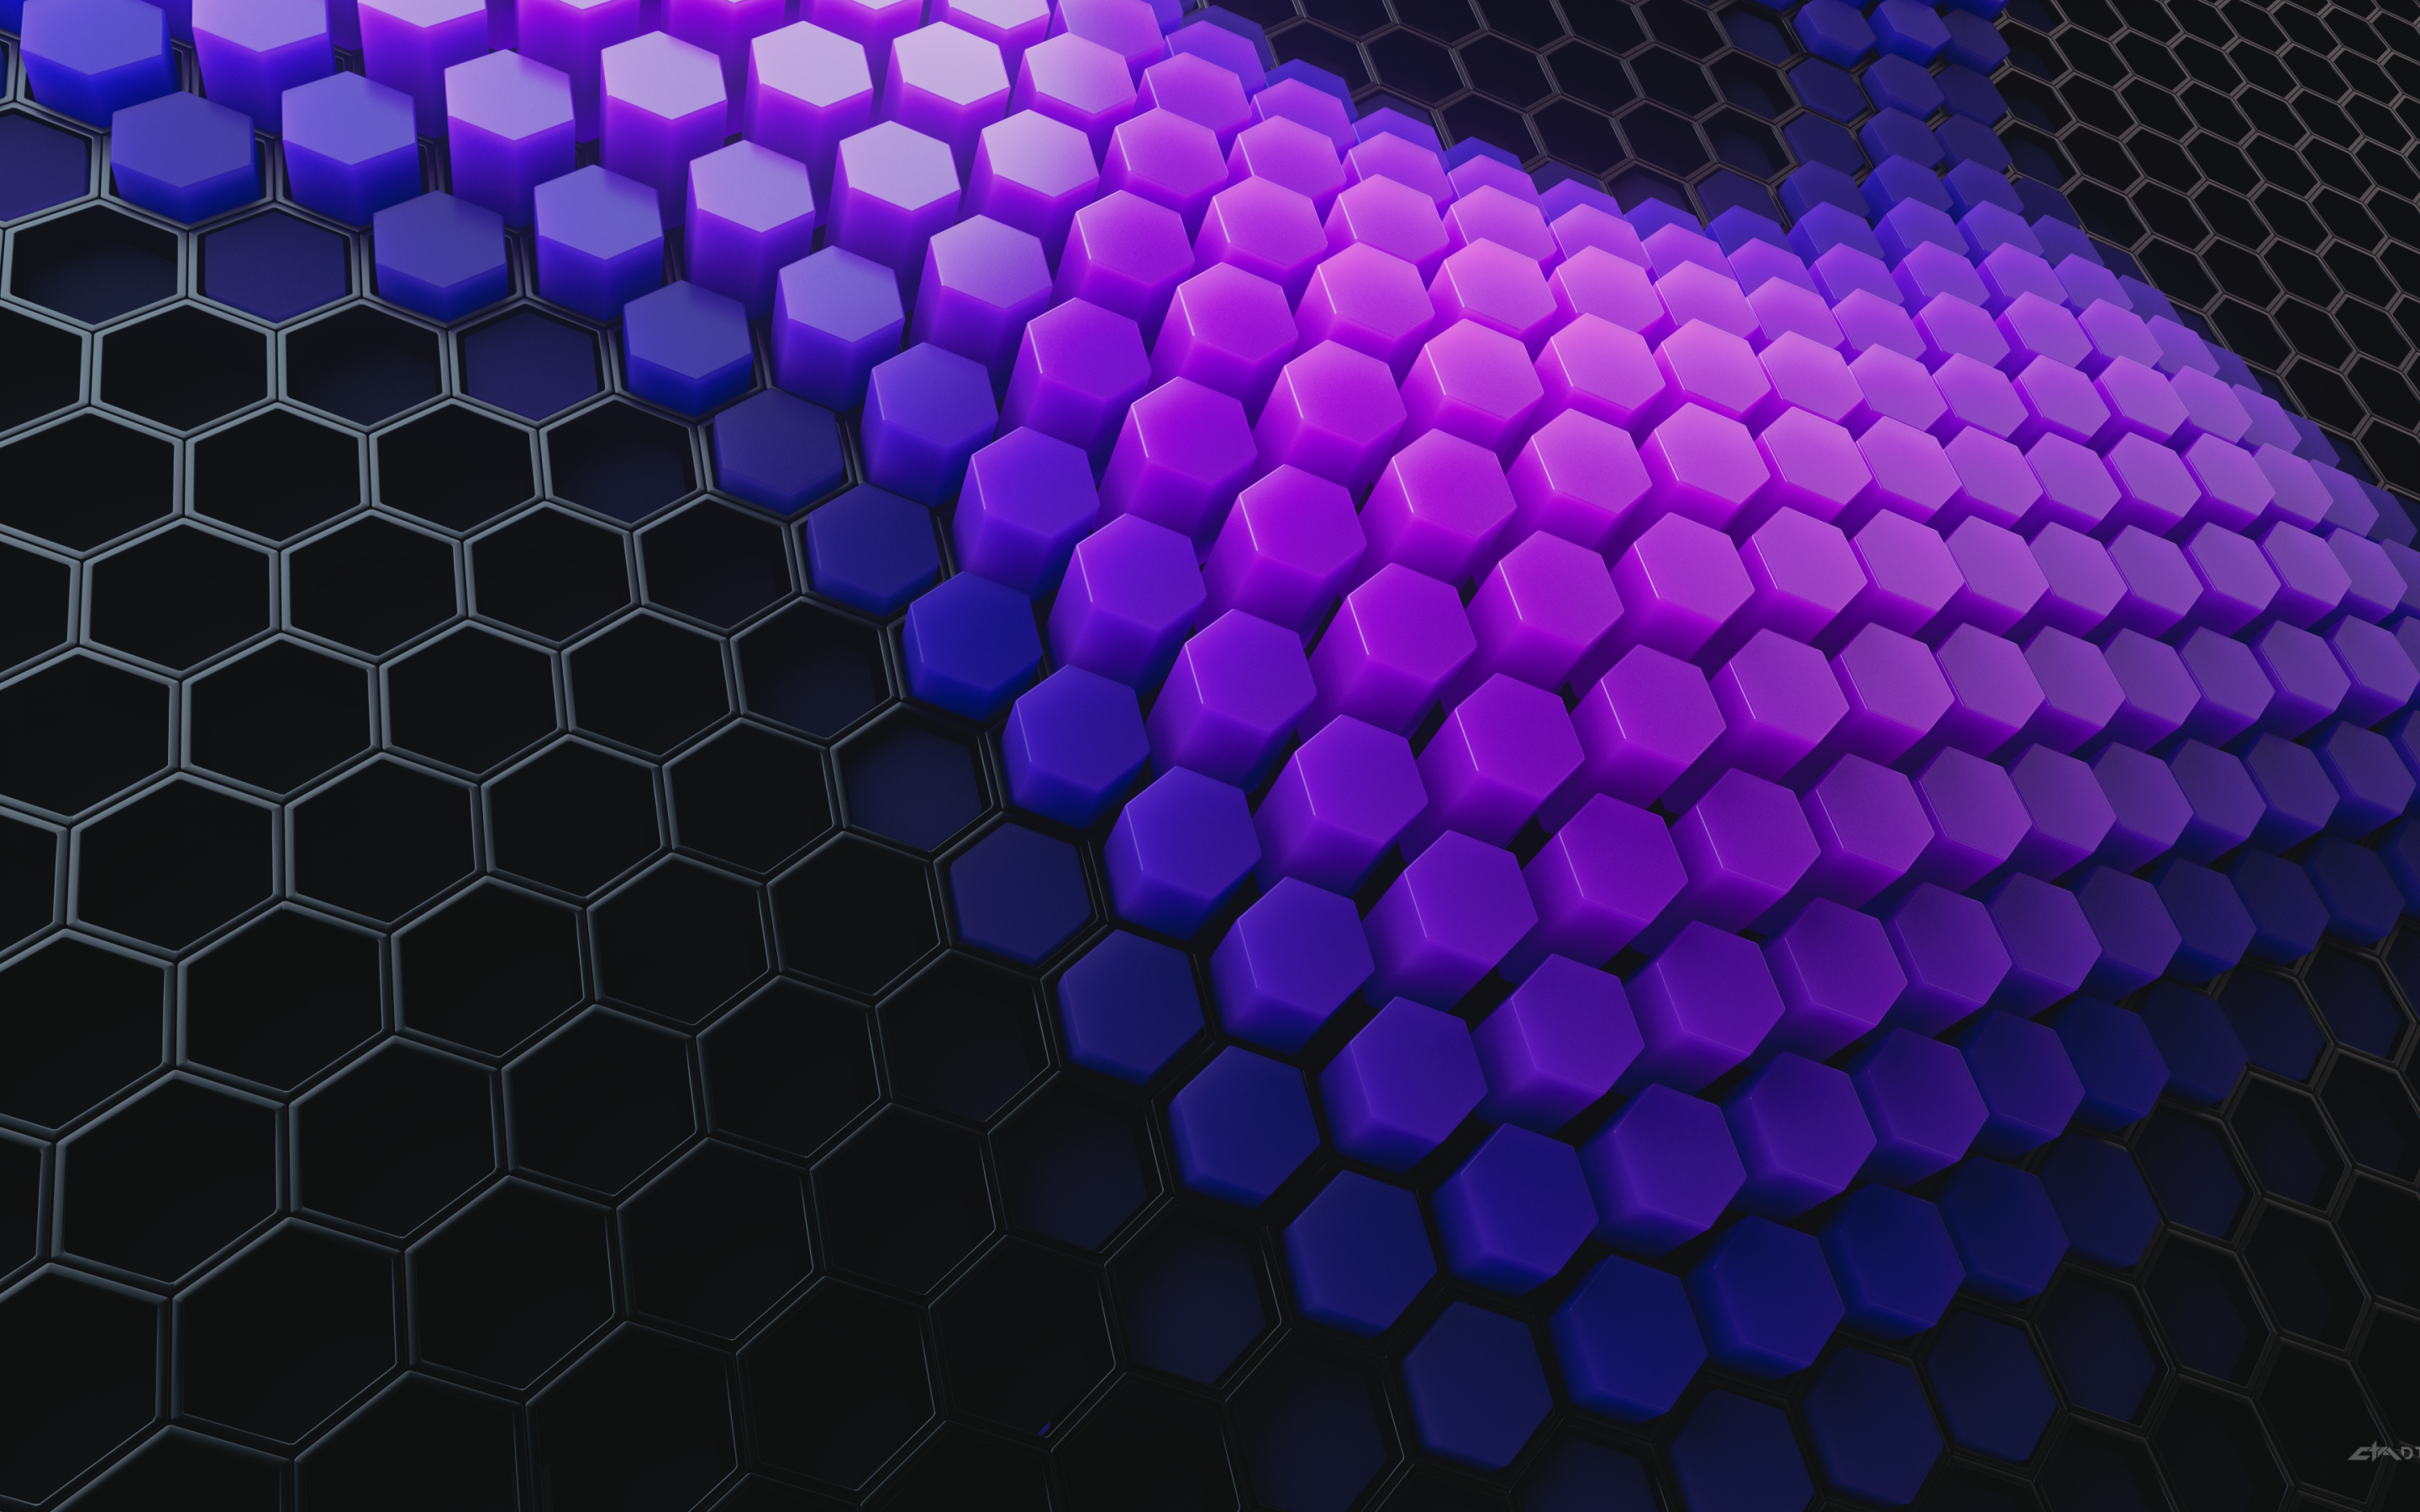 Hình nền hexagon trừu tượng: Bộ hình nền hexagon trừu tượng sẽ mang đến cho bạn không gian làm việc đầy năng lượng. Với đường nét chính xác, bố cục độc đáo và màu sắc tinh tế sẽ khiến bạn dễ dàng tập trung vào công việc và nâng cao hiệu quả làm việc của mình. Hãy khám phá ngay bộ hình nền này để trang trí cho máy tính của bạn thêm sinh động, mới mẻ nhé!